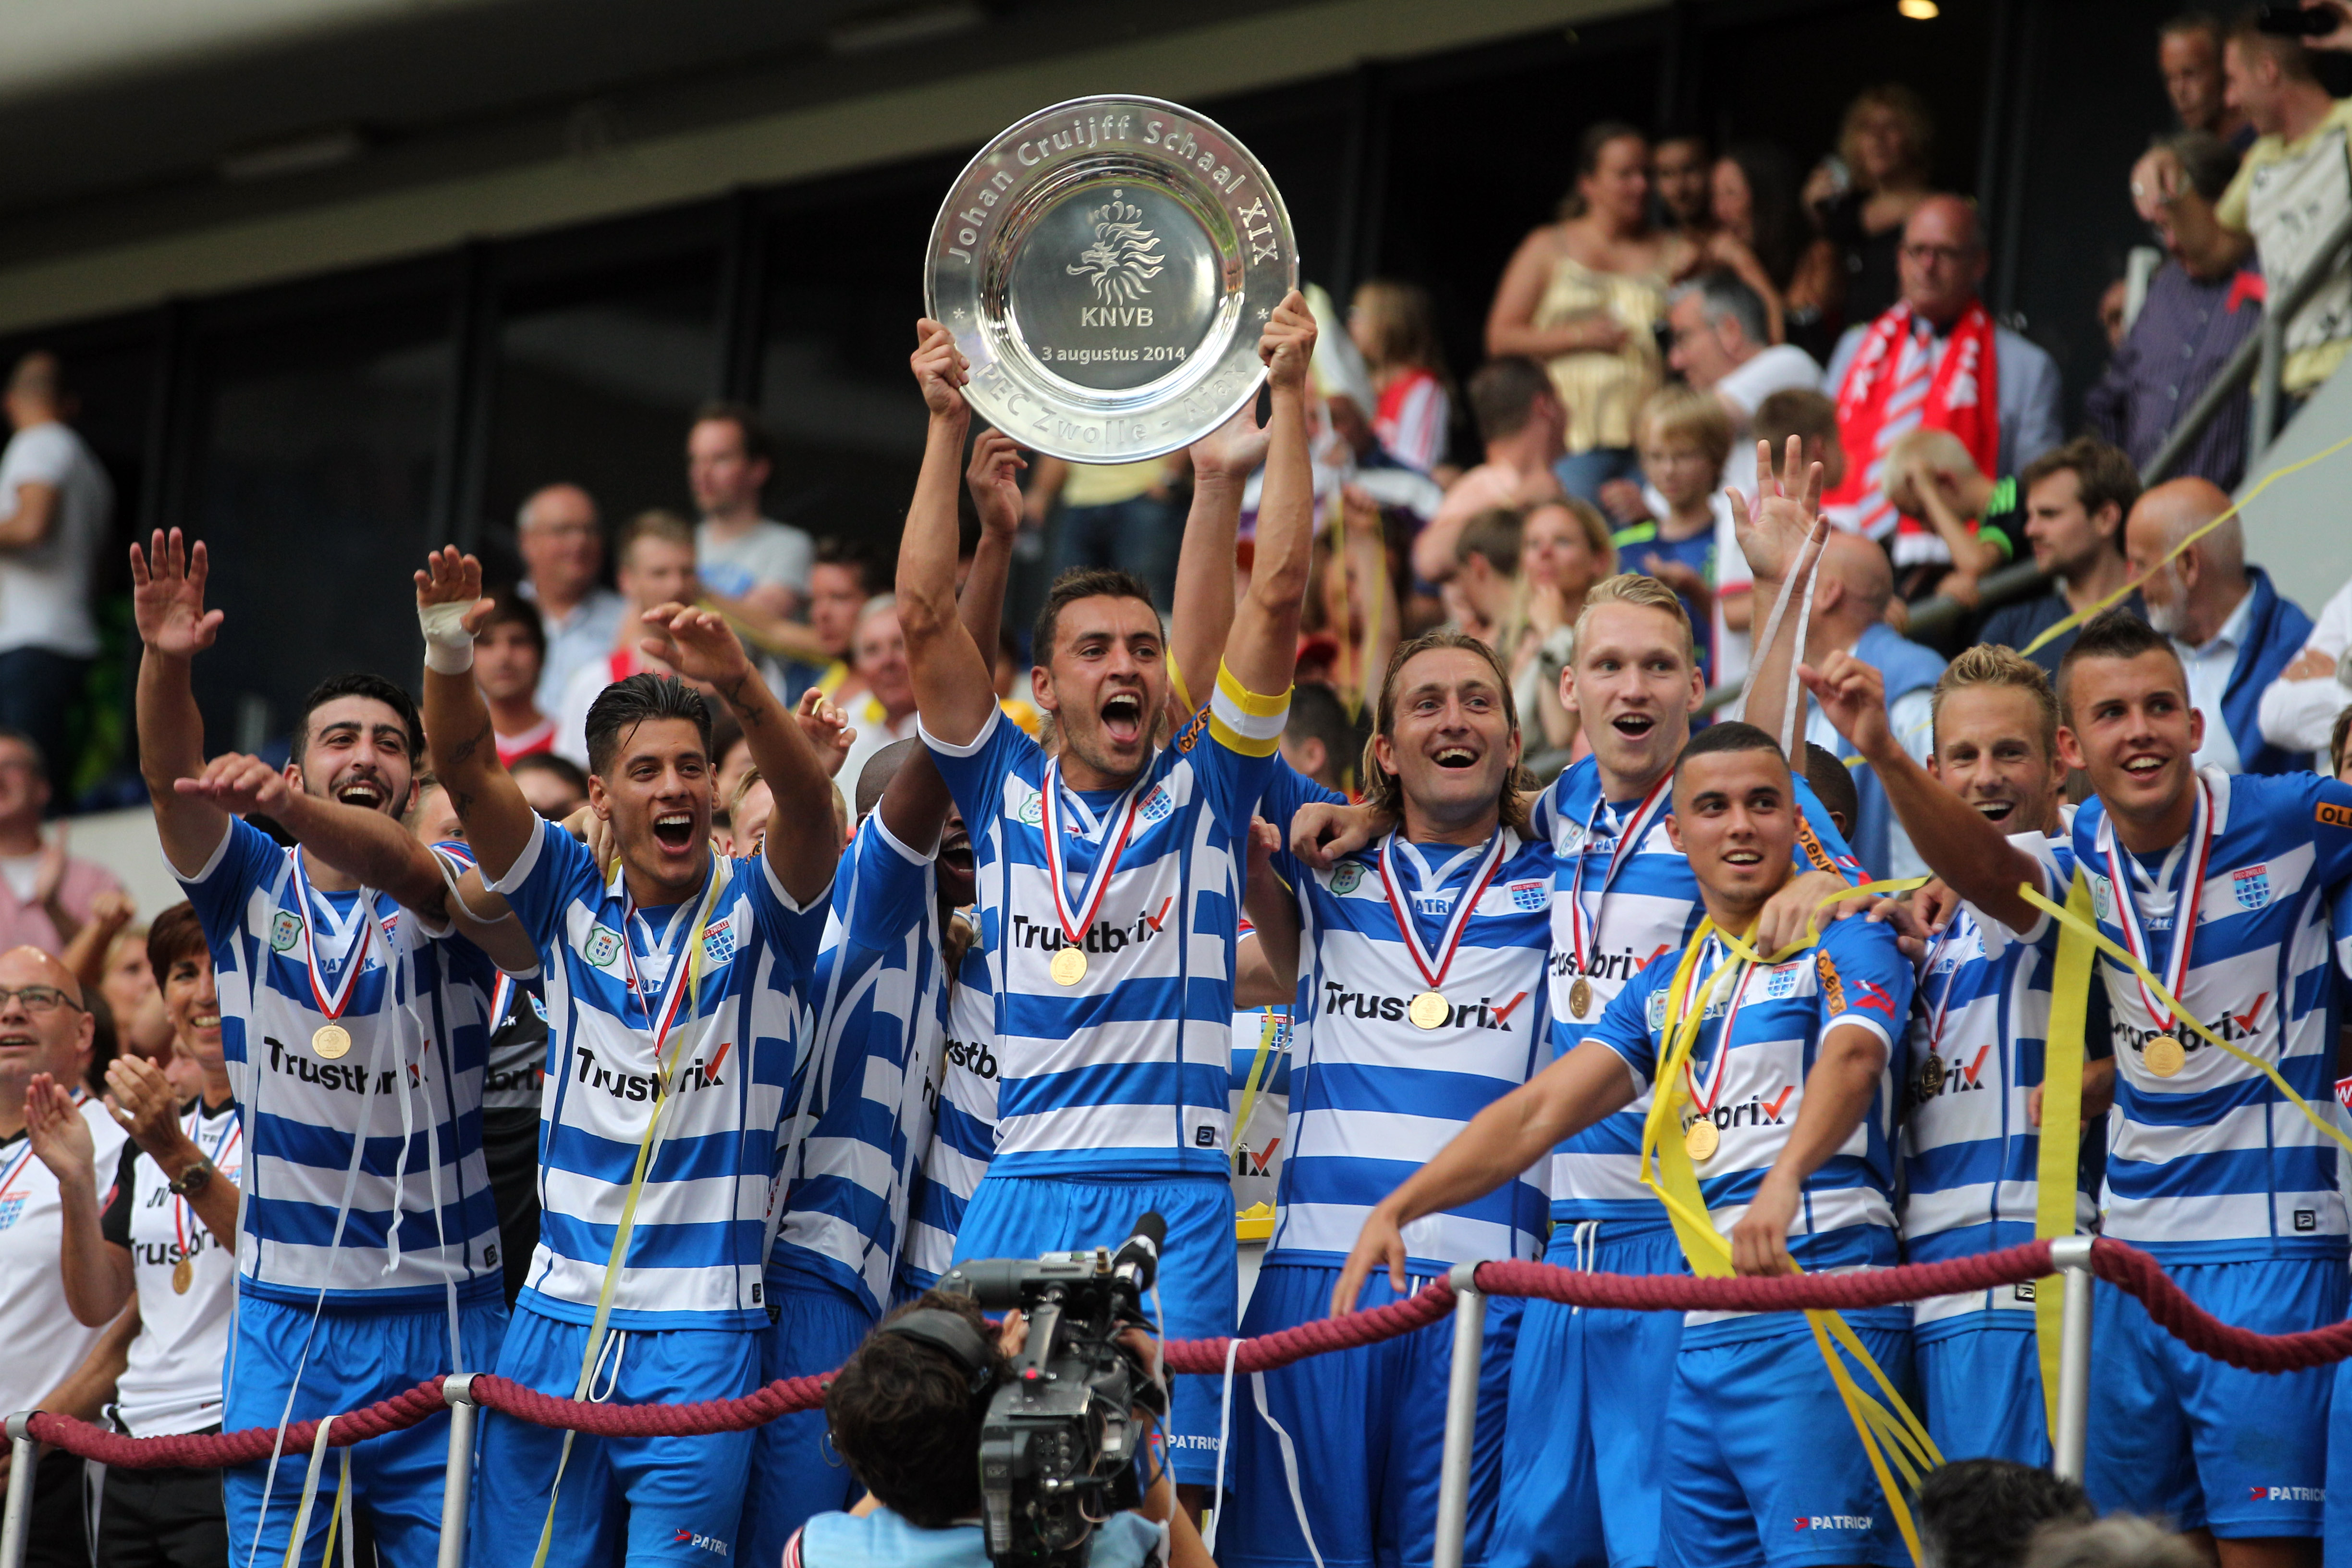 Ook voor PEC Zwolle een primeur. De club wordt voor het eerst in de geschiedenis de winnaar van de Johan Cruijff Schaal. Aanvoerder Bram van Polen krijgt de schaal overhandigd van oud-voetballer Ben Hendriks.